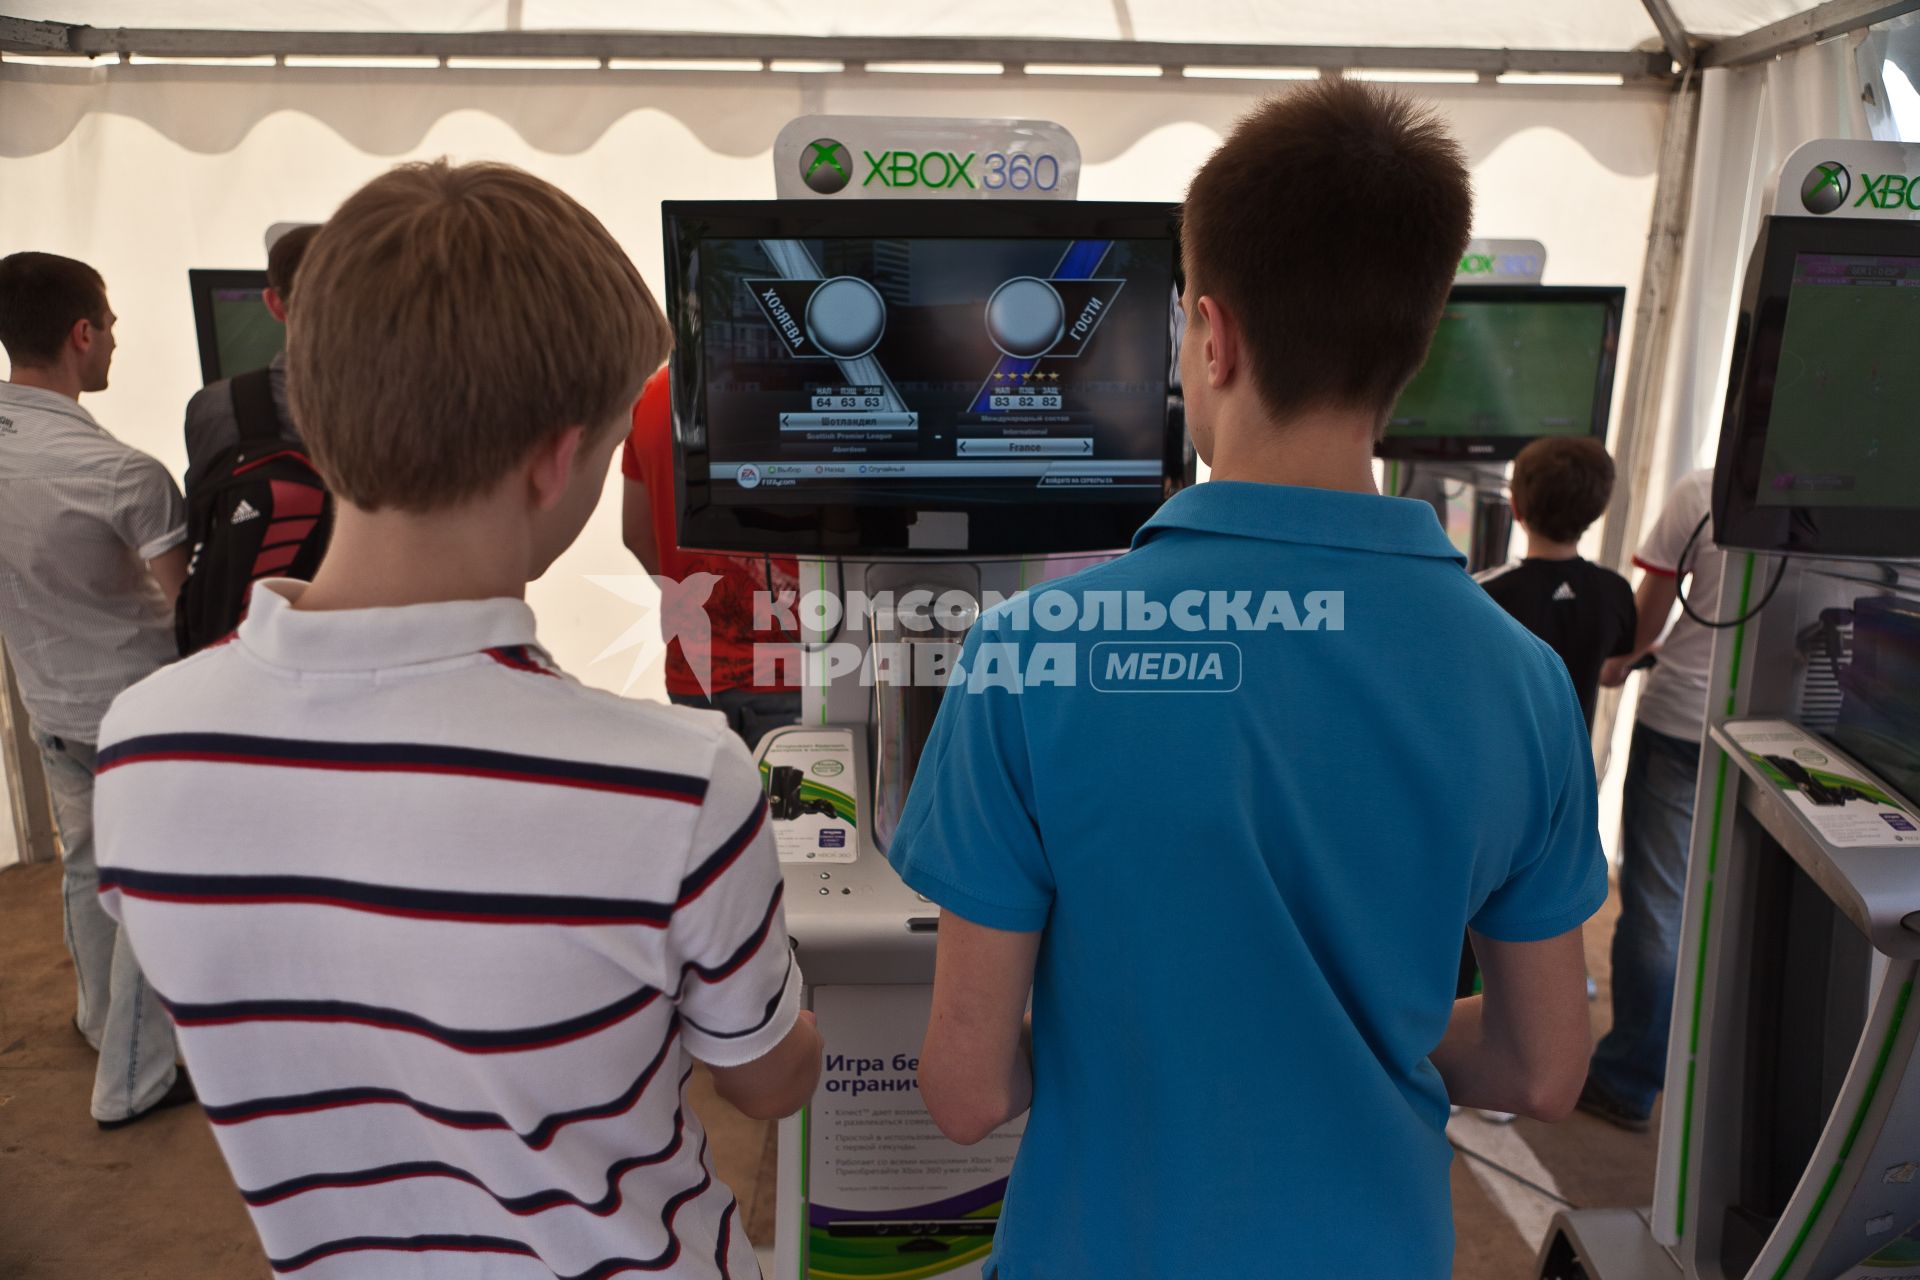 ЦПКиО им. Горького. На снимке: мальчики играют в компьютерный футбол.